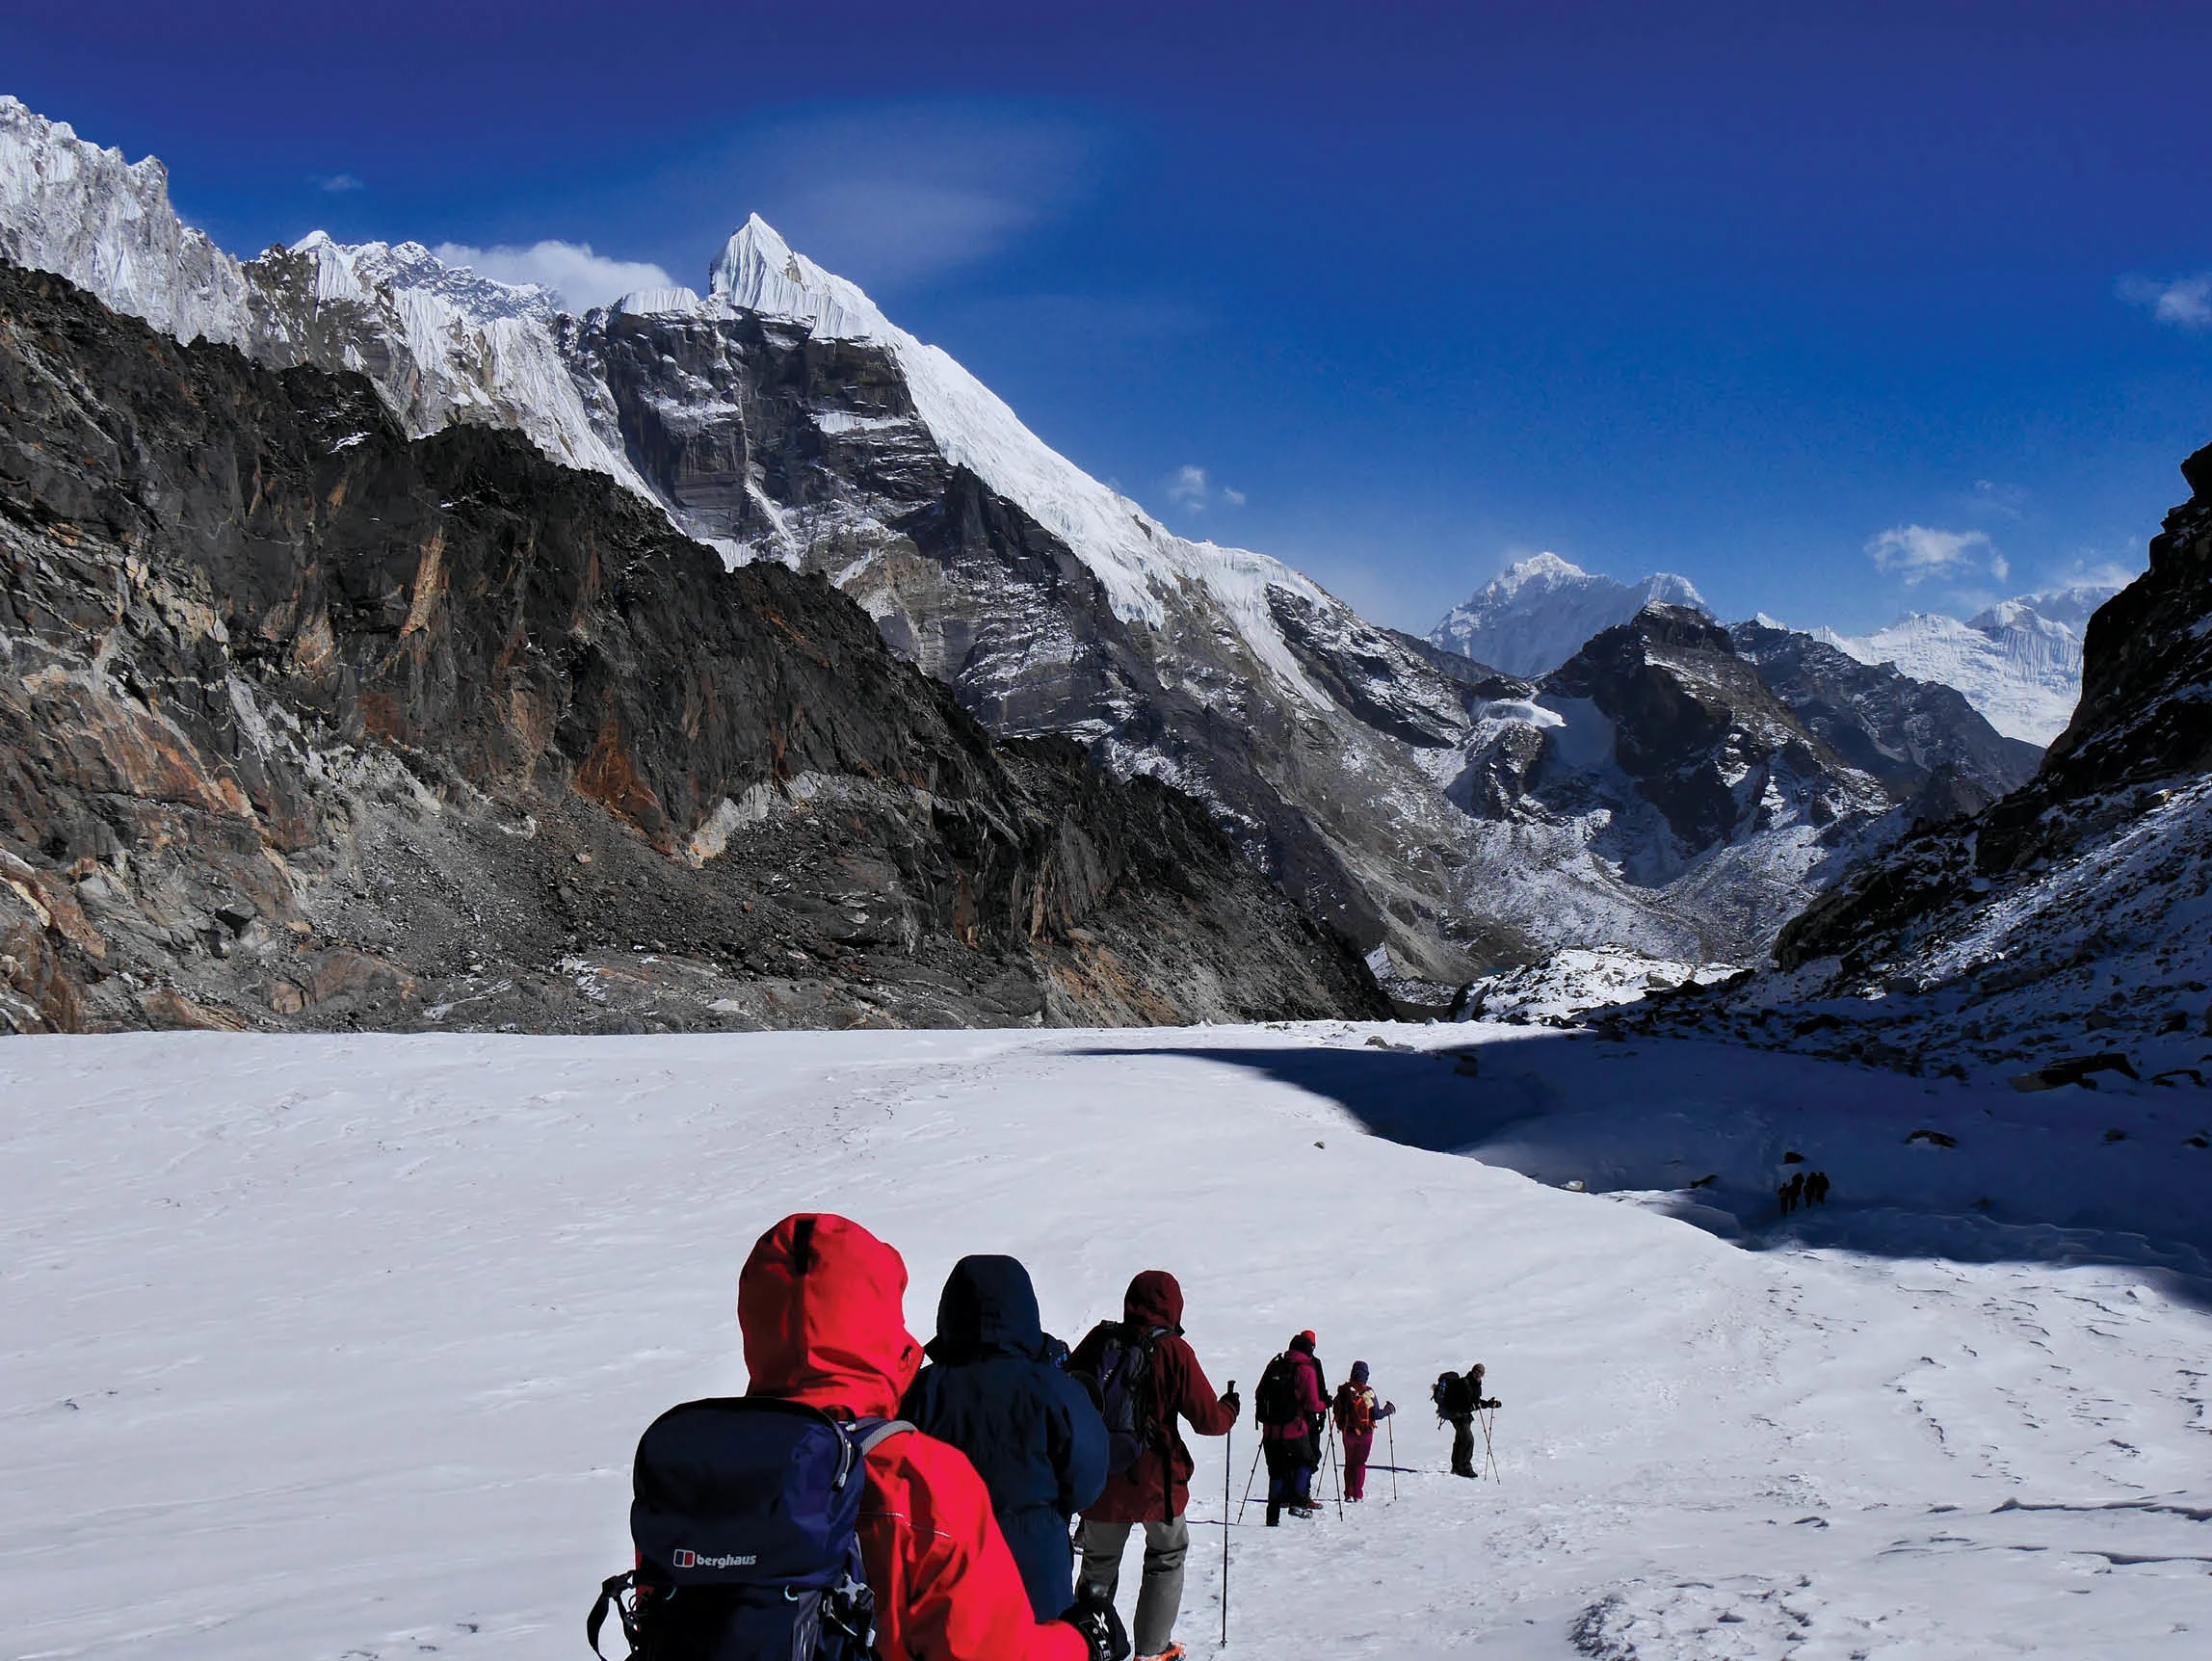 People trekking in Nepal across an ice field.